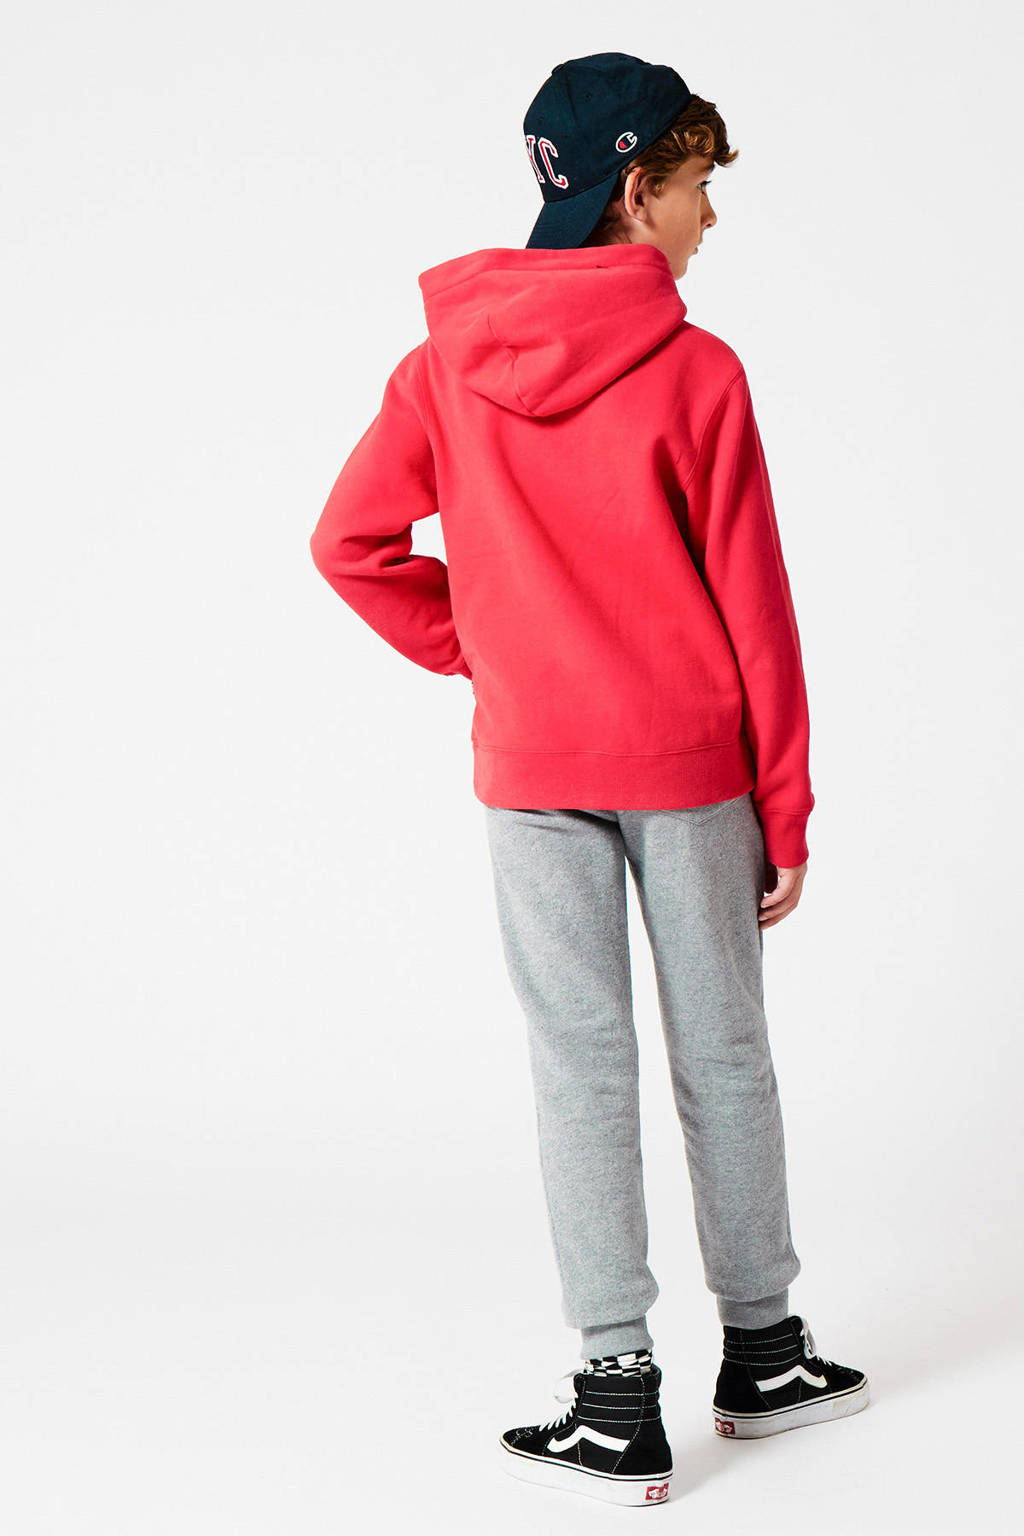 Rode jongens America Today Junior hoodie Steven van sweat materiaal met tekst print, lange mouwen en capuchon